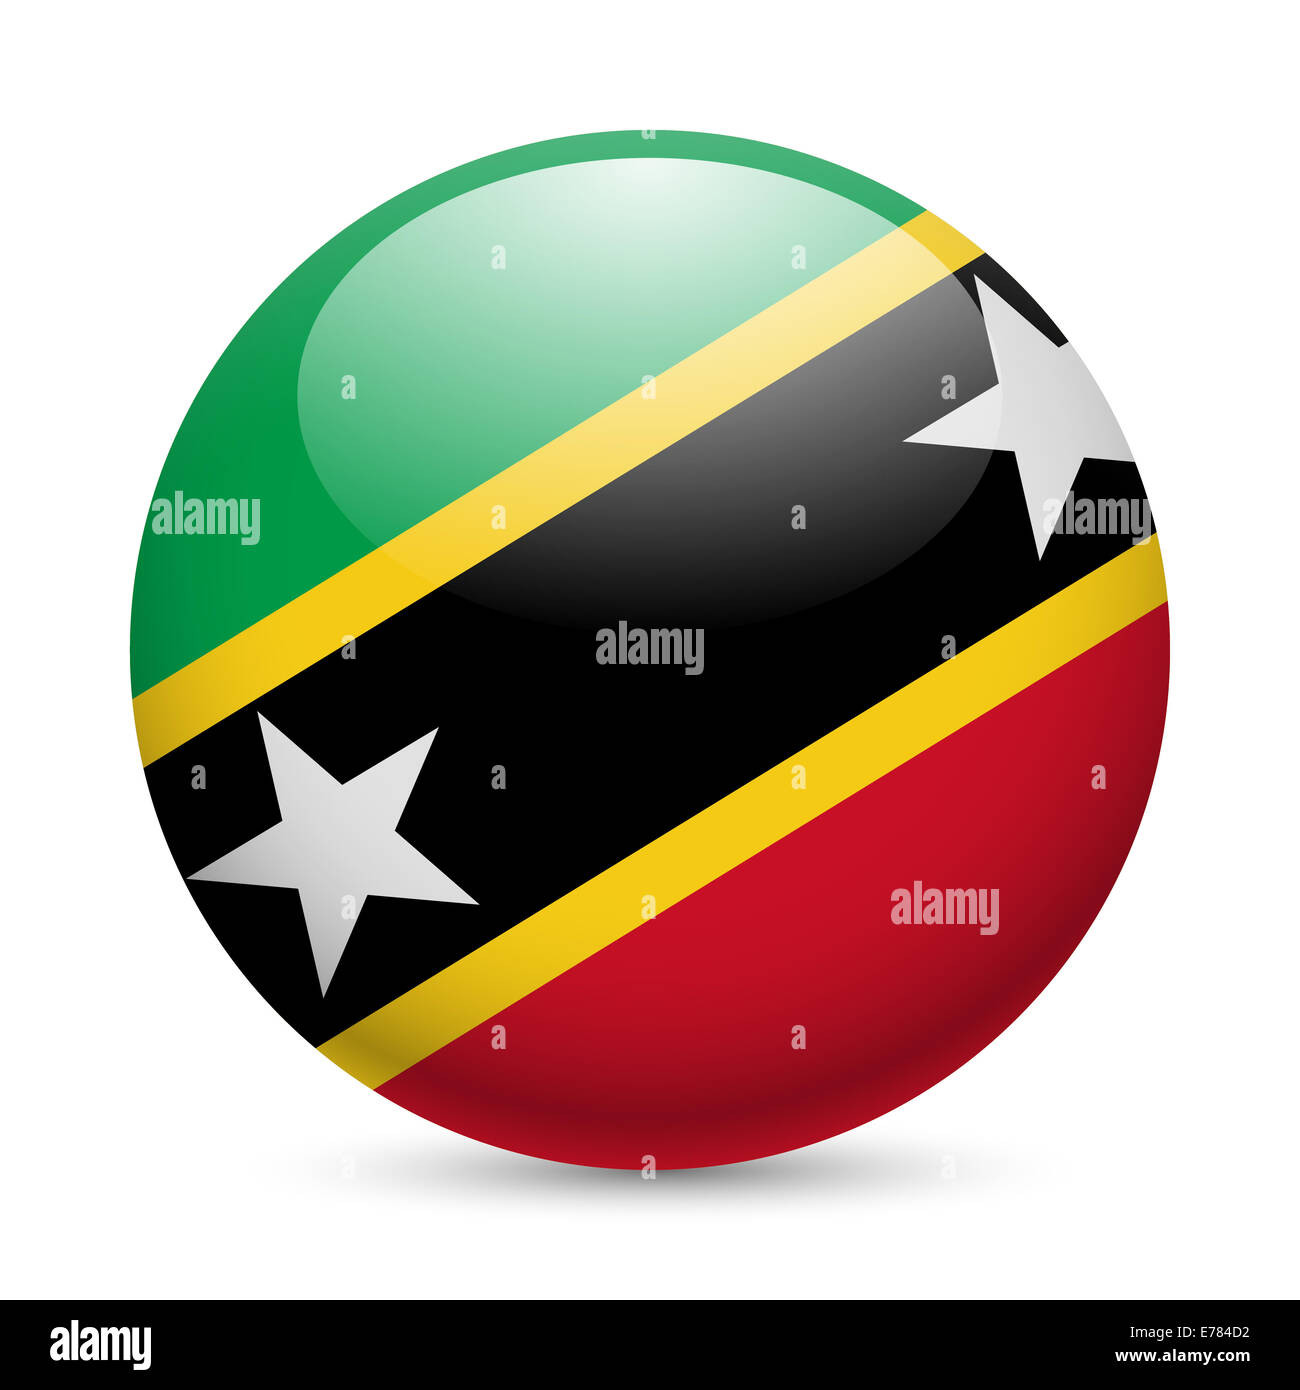 Flagge der Föderation St. Kitts und Nevis als runde glänzende Symbol. Schaltfläche mit Flaggendesign Stockfoto